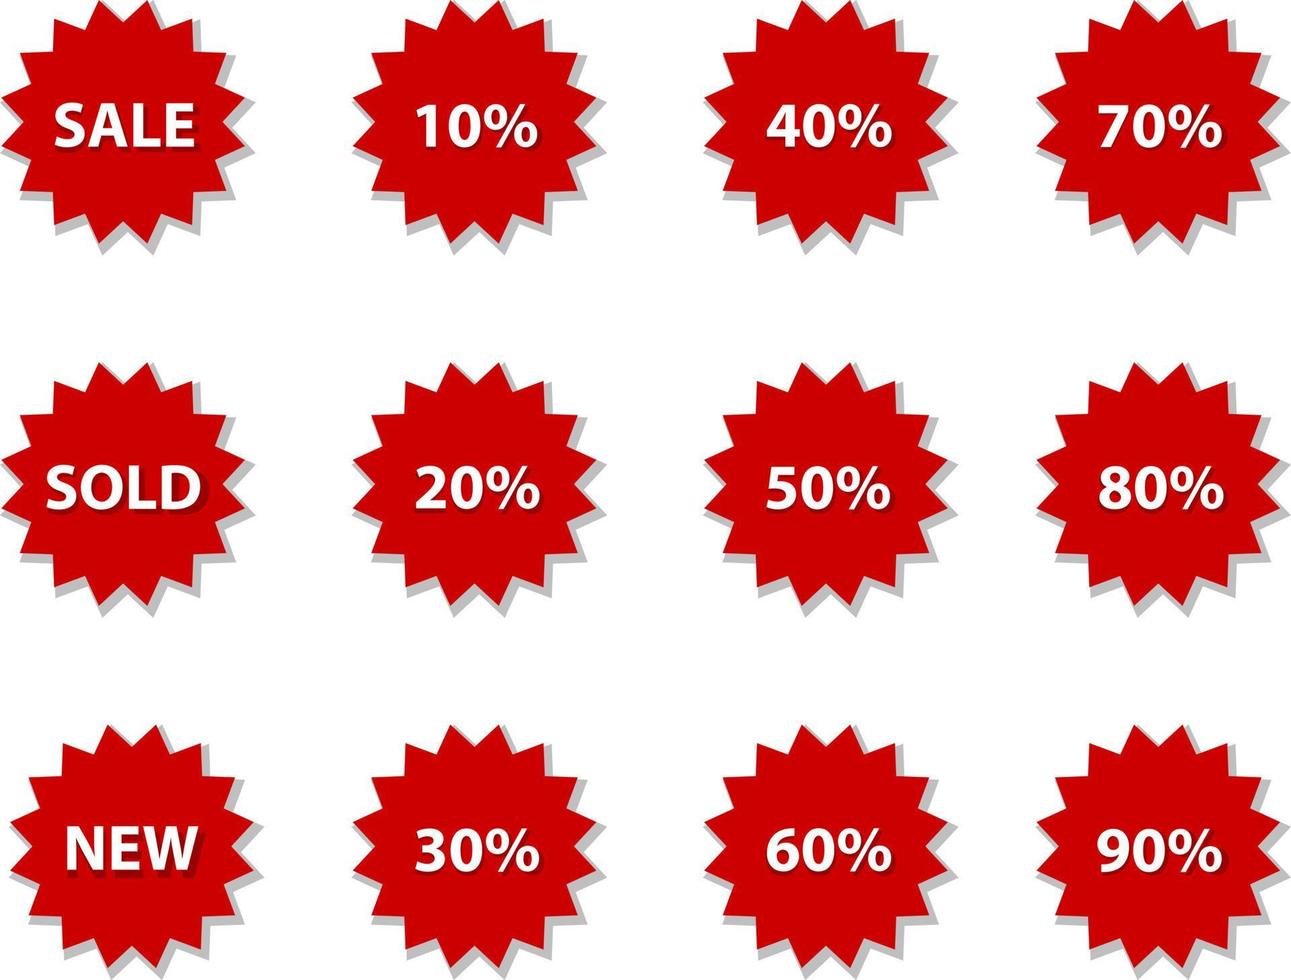 insignias de venta, vector de etiquetas. conjunto de iconos de color rojo venta, vendido, nuevo, descuentos porcentuales.